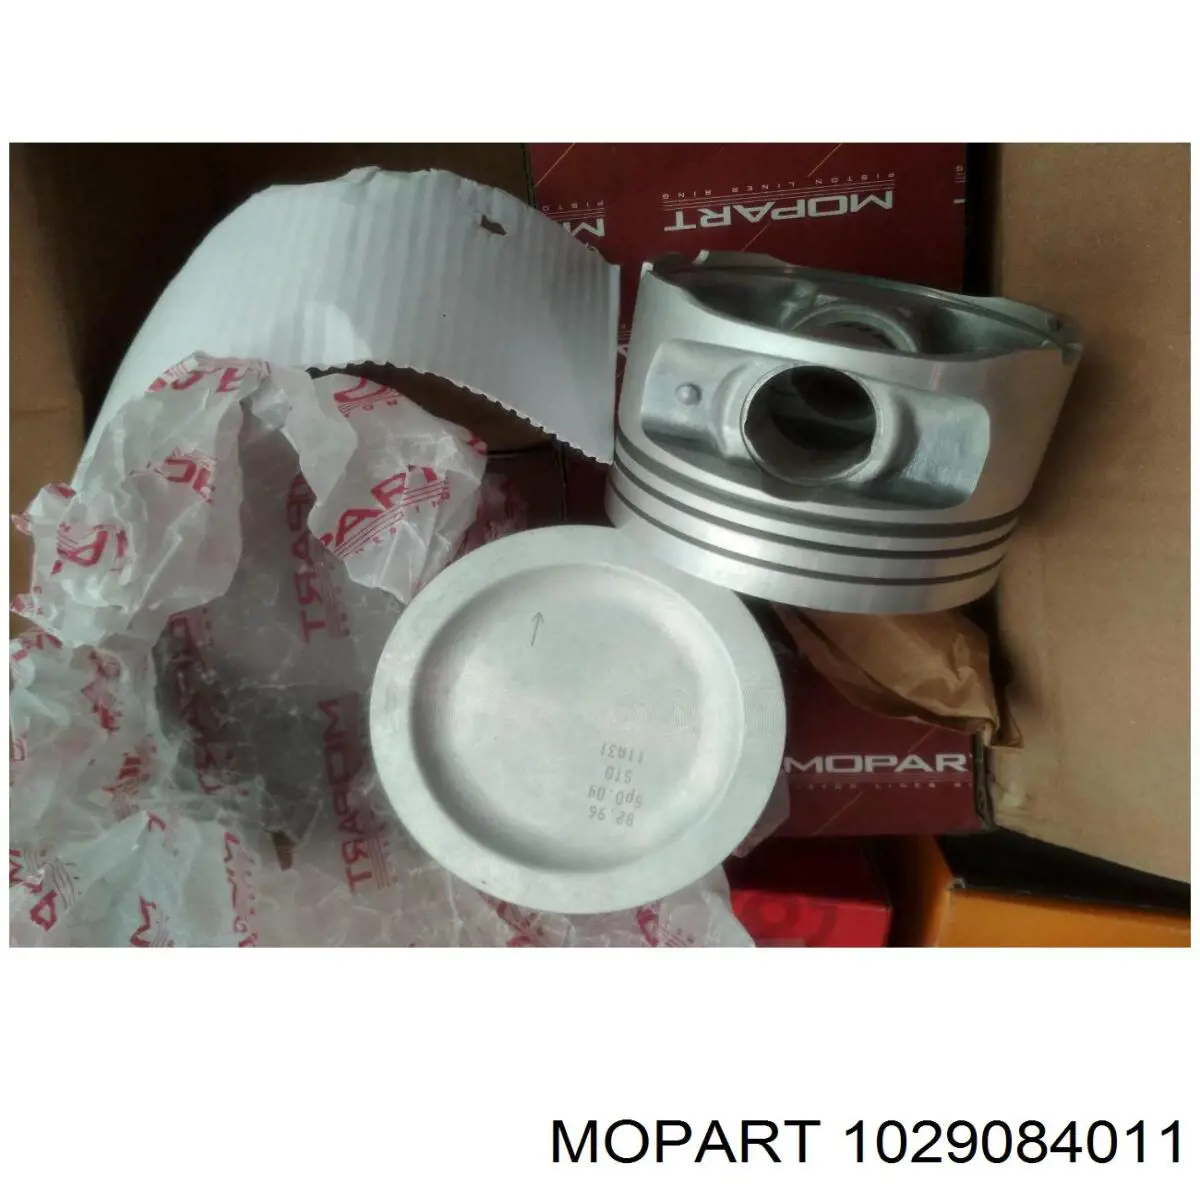 MP908402 Mopart поршень в комплекте на 1 цилиндр, 2-й ремонт (+0,50)